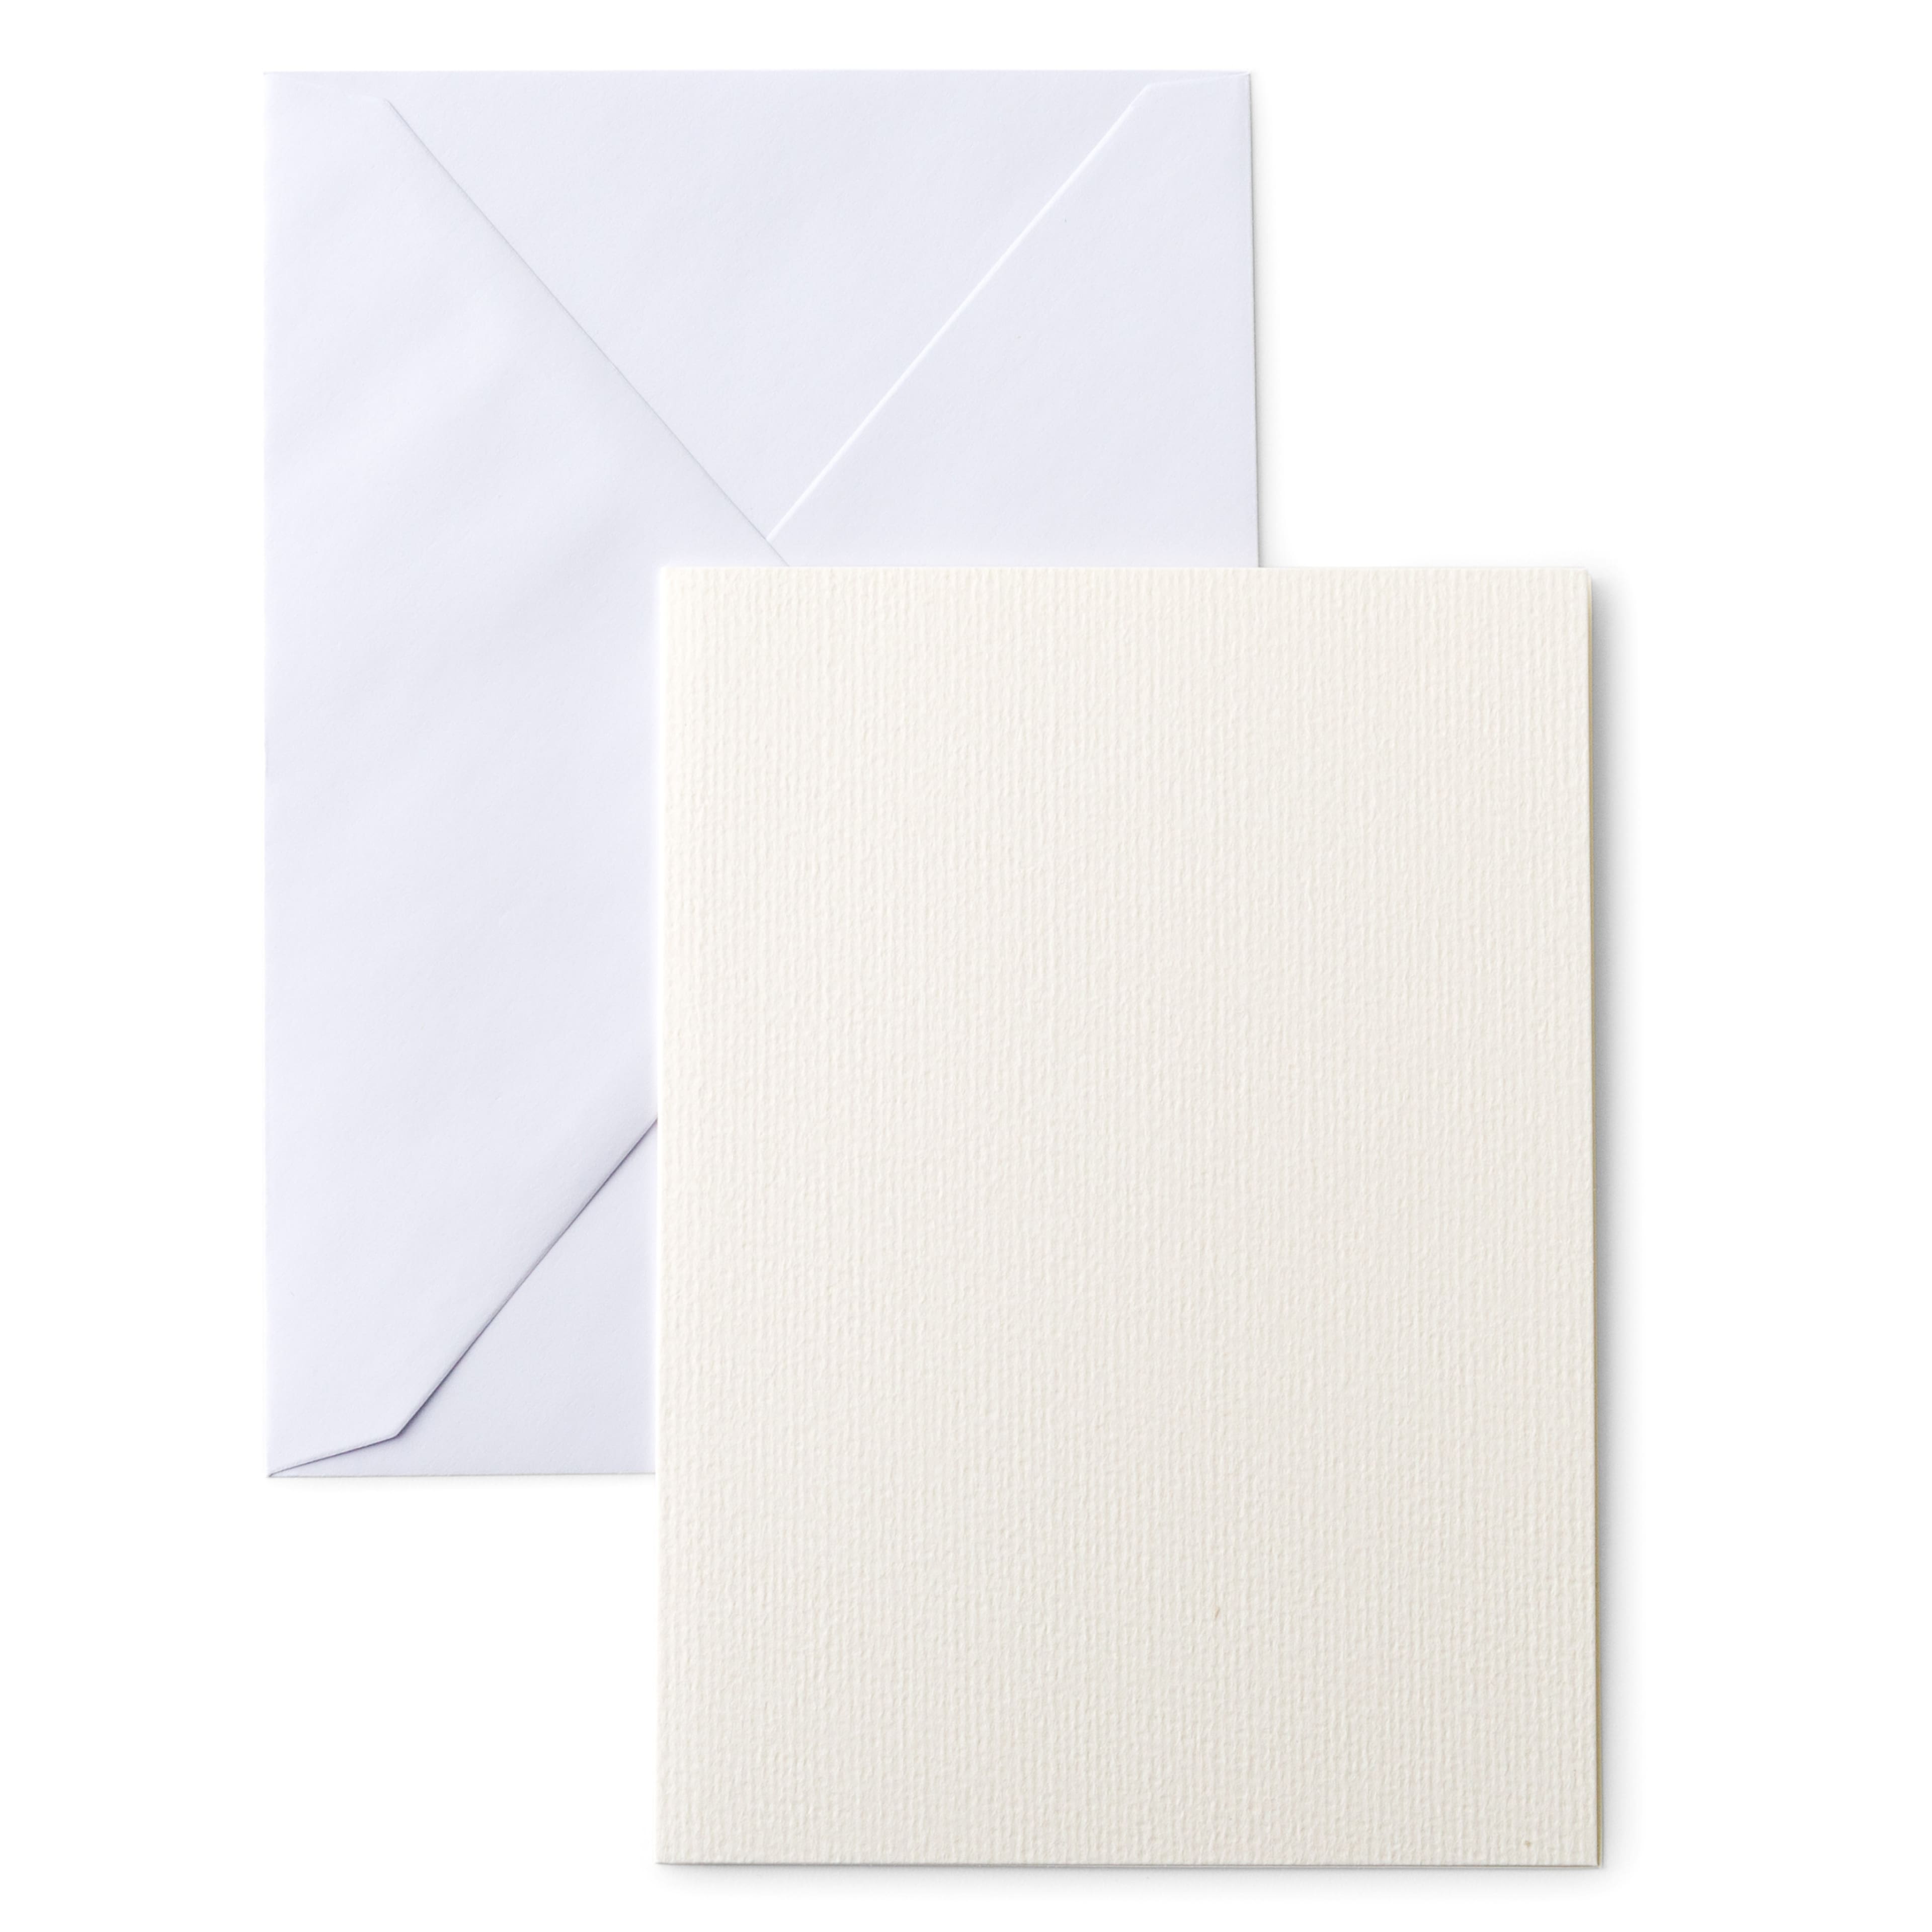 Cricut&#x2122; R40 Watercolor Cards &#x26; Envelopes, 10ct.